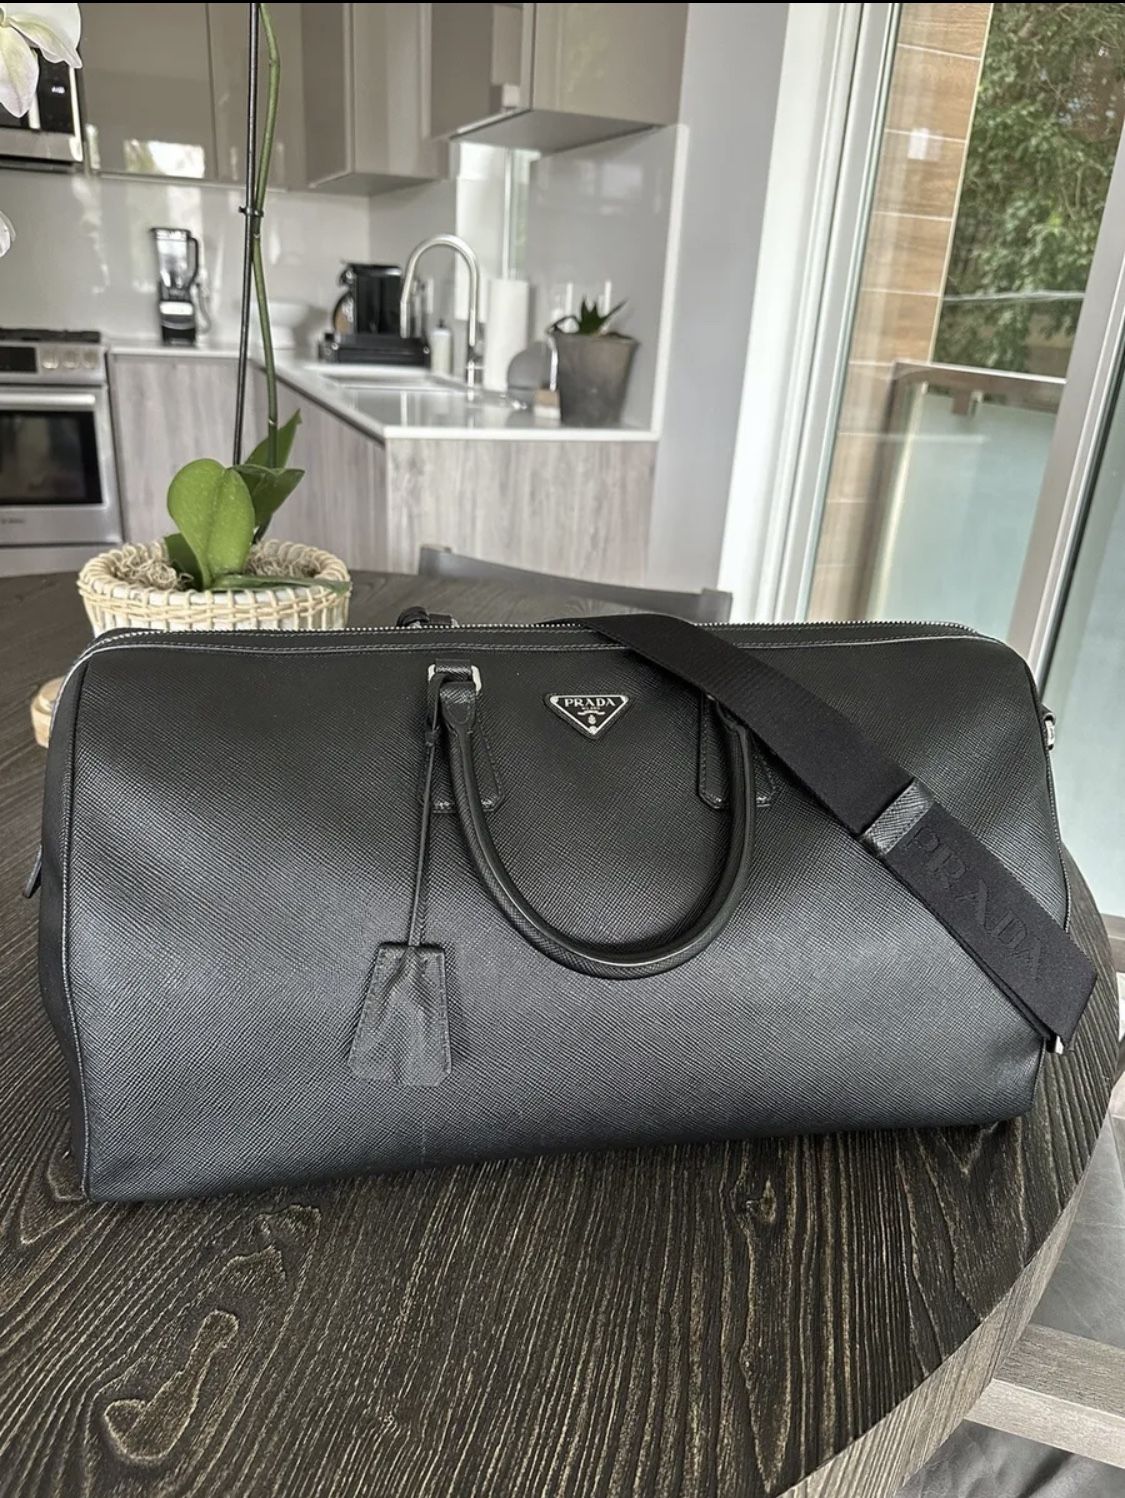 100% Authentic Prada Saffiano Leather Travel Bag In Black